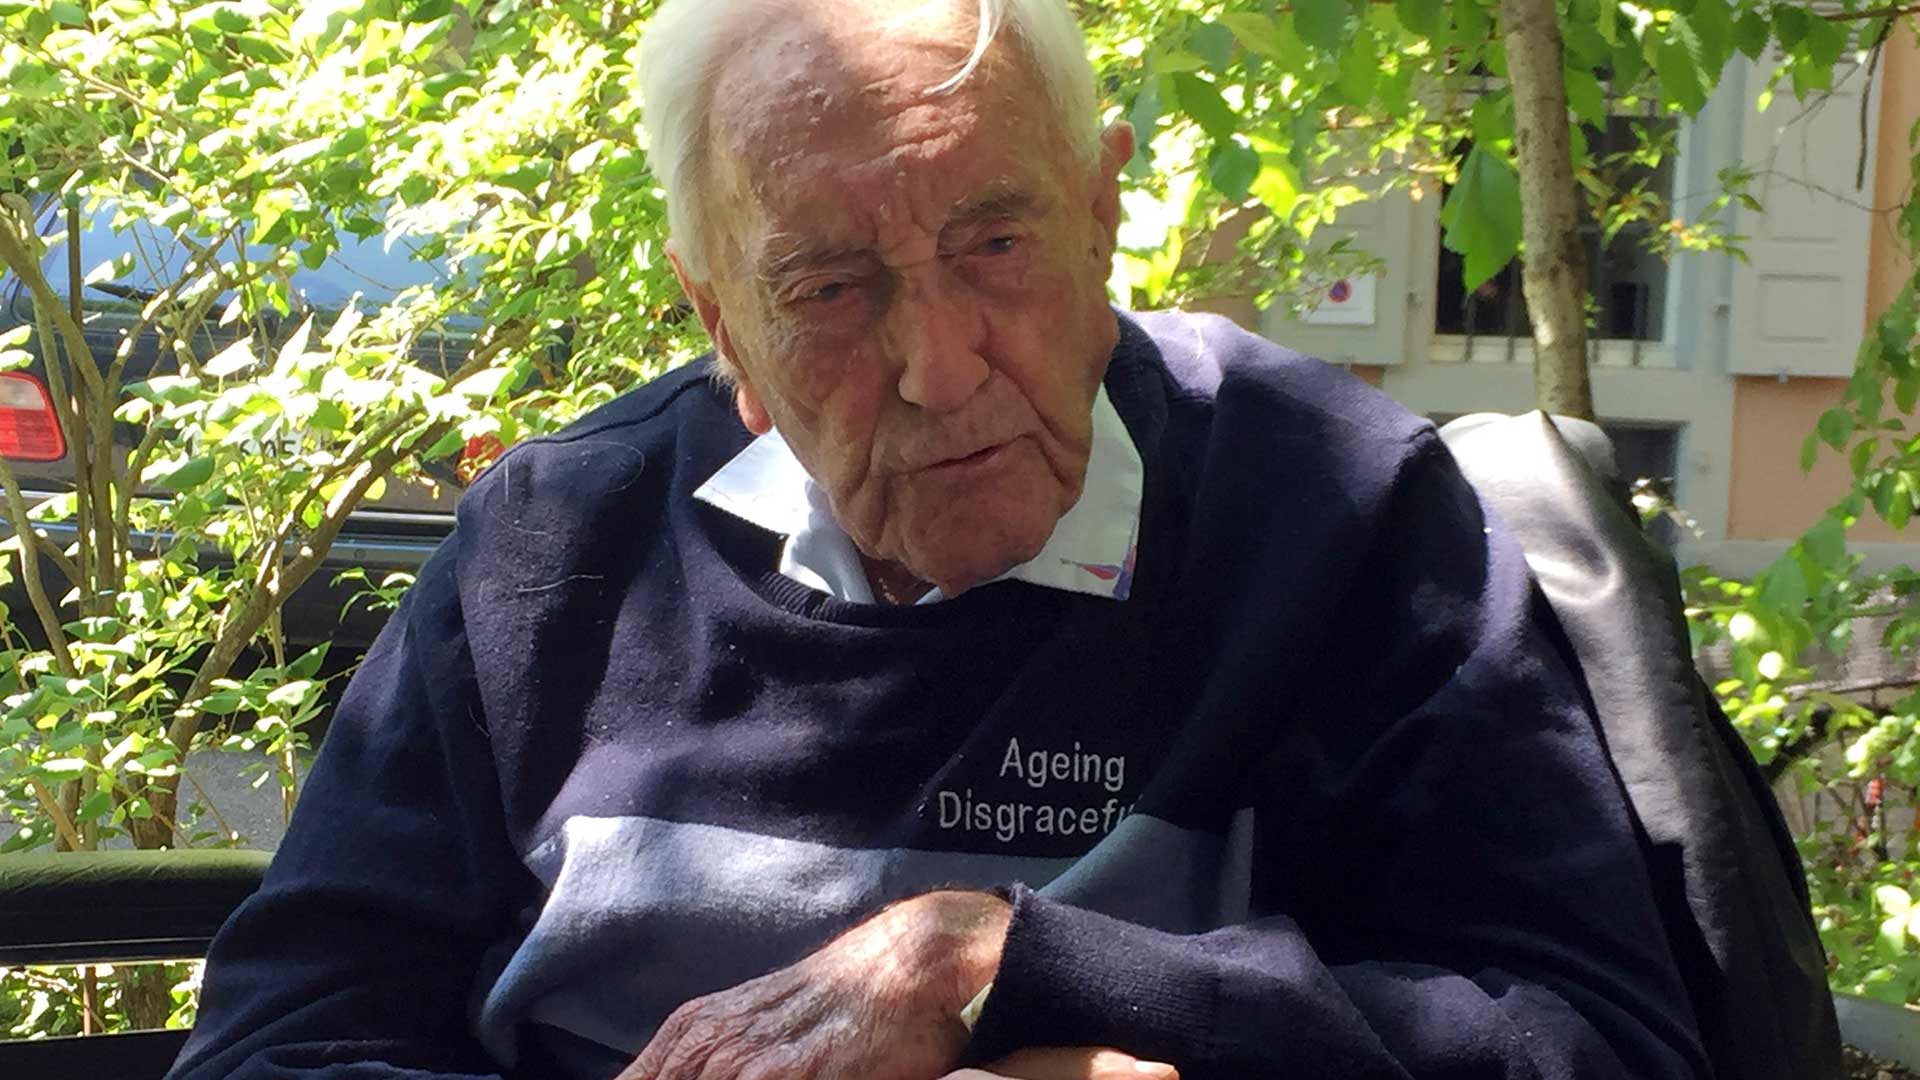 Muere el científico australiano de 104 años por suicidio asistido en Suiza